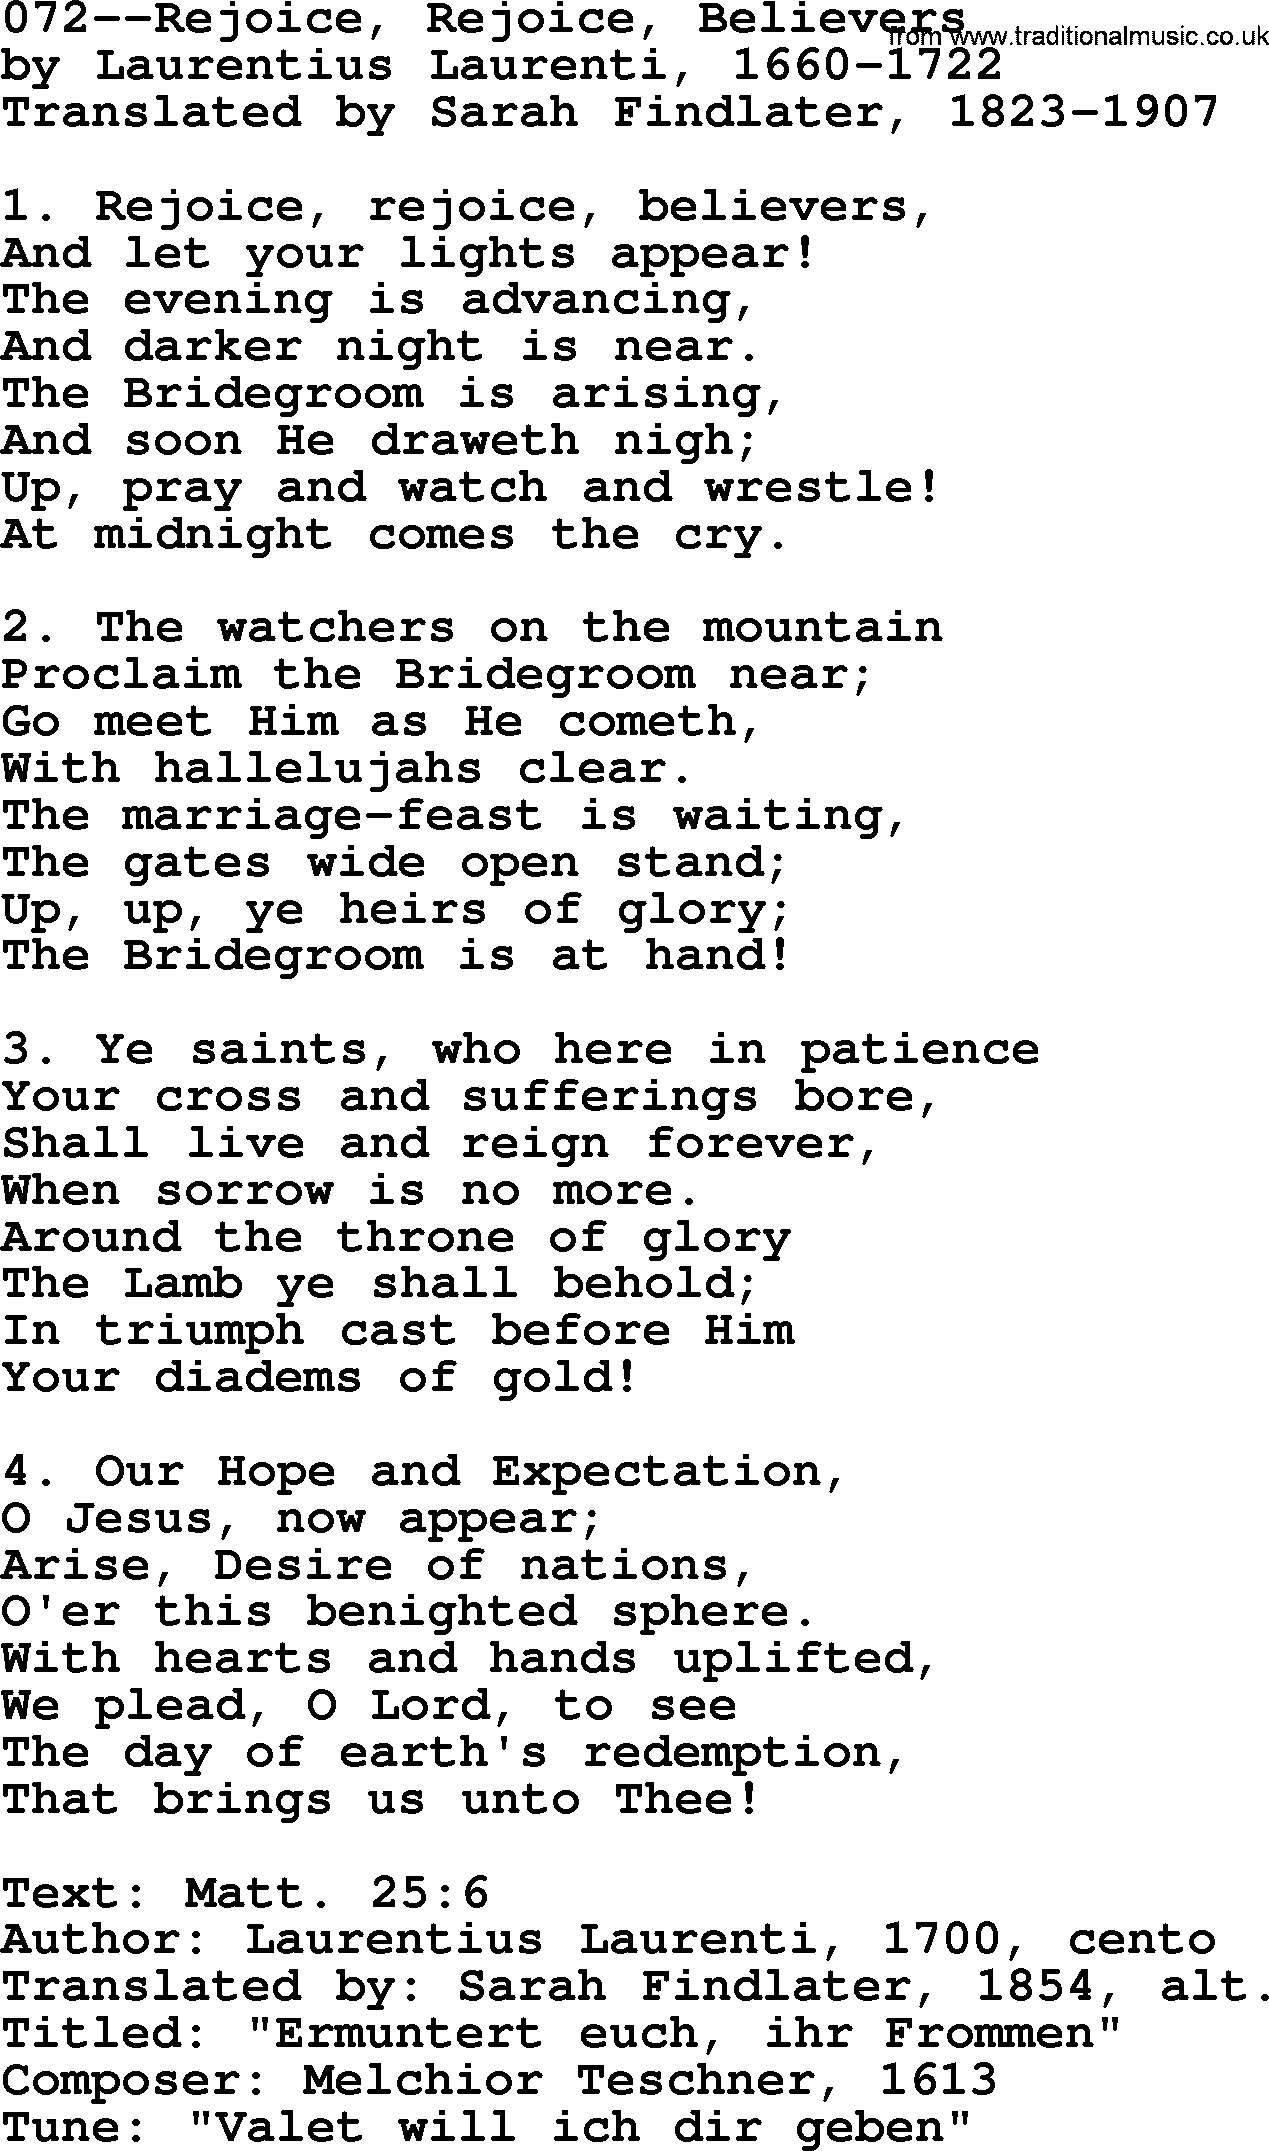 Lutheran Hymn: 072--Rejoice, Rejoice, Believers.txt lyrics with PDF